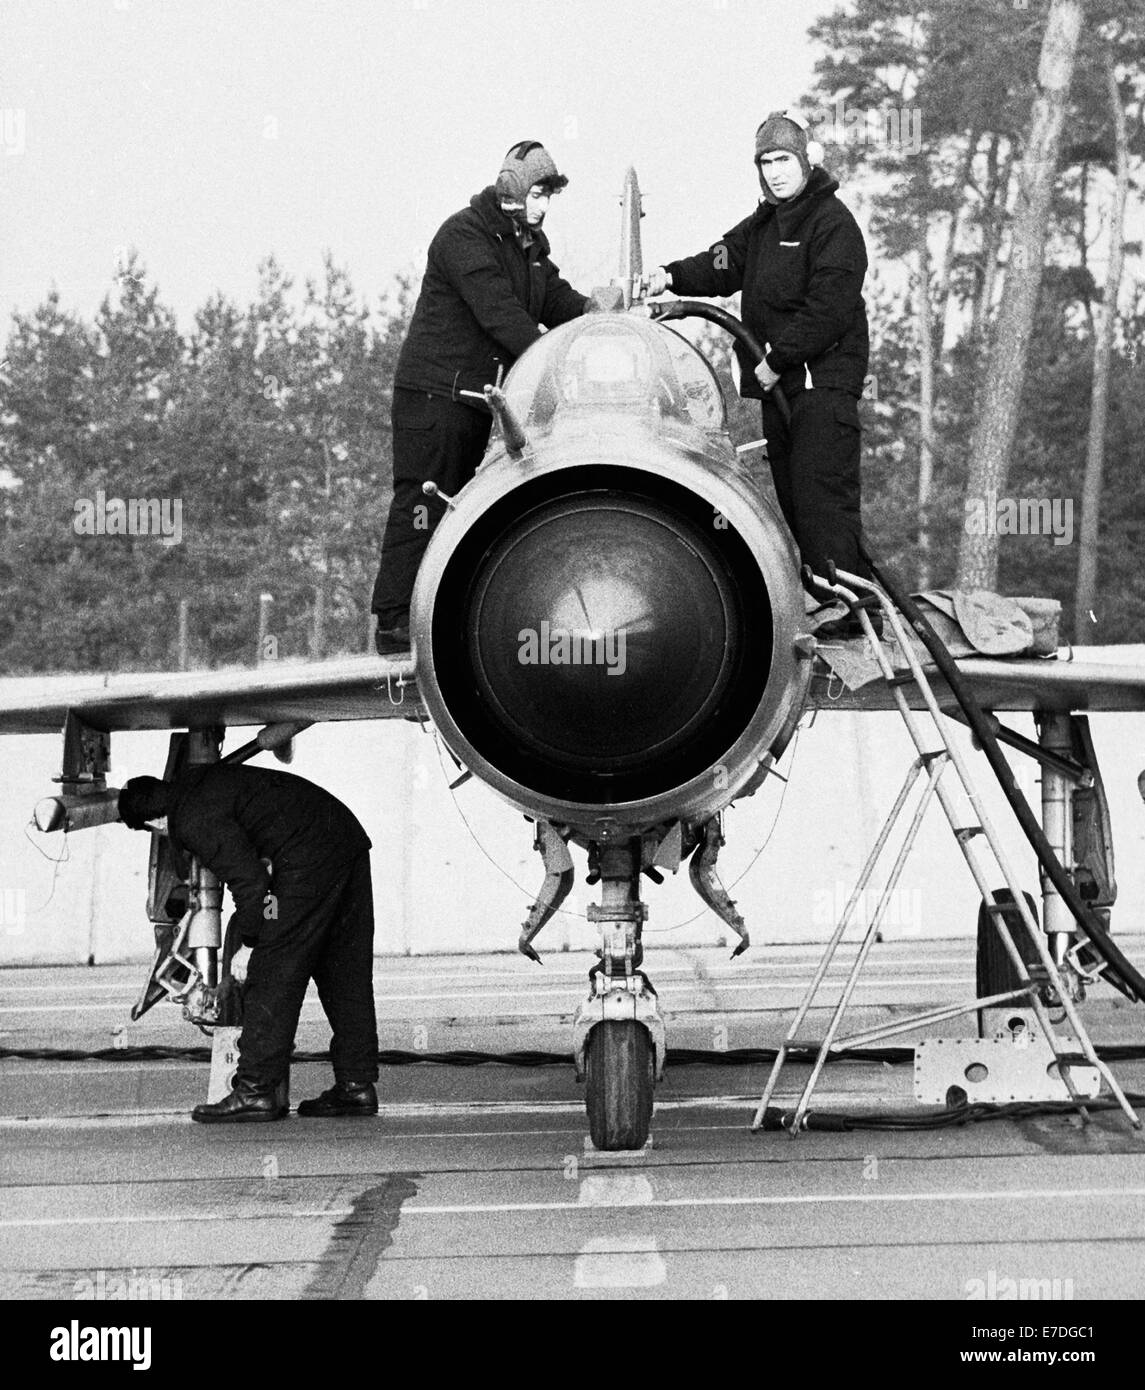 National Esercito del popolo jet fighter durante il corso di formazione nella Germania orientale nel 1984. Un caccia viene controllato e preparato per il decollo. Foto: Reinhard Kaufhold Foto Stock